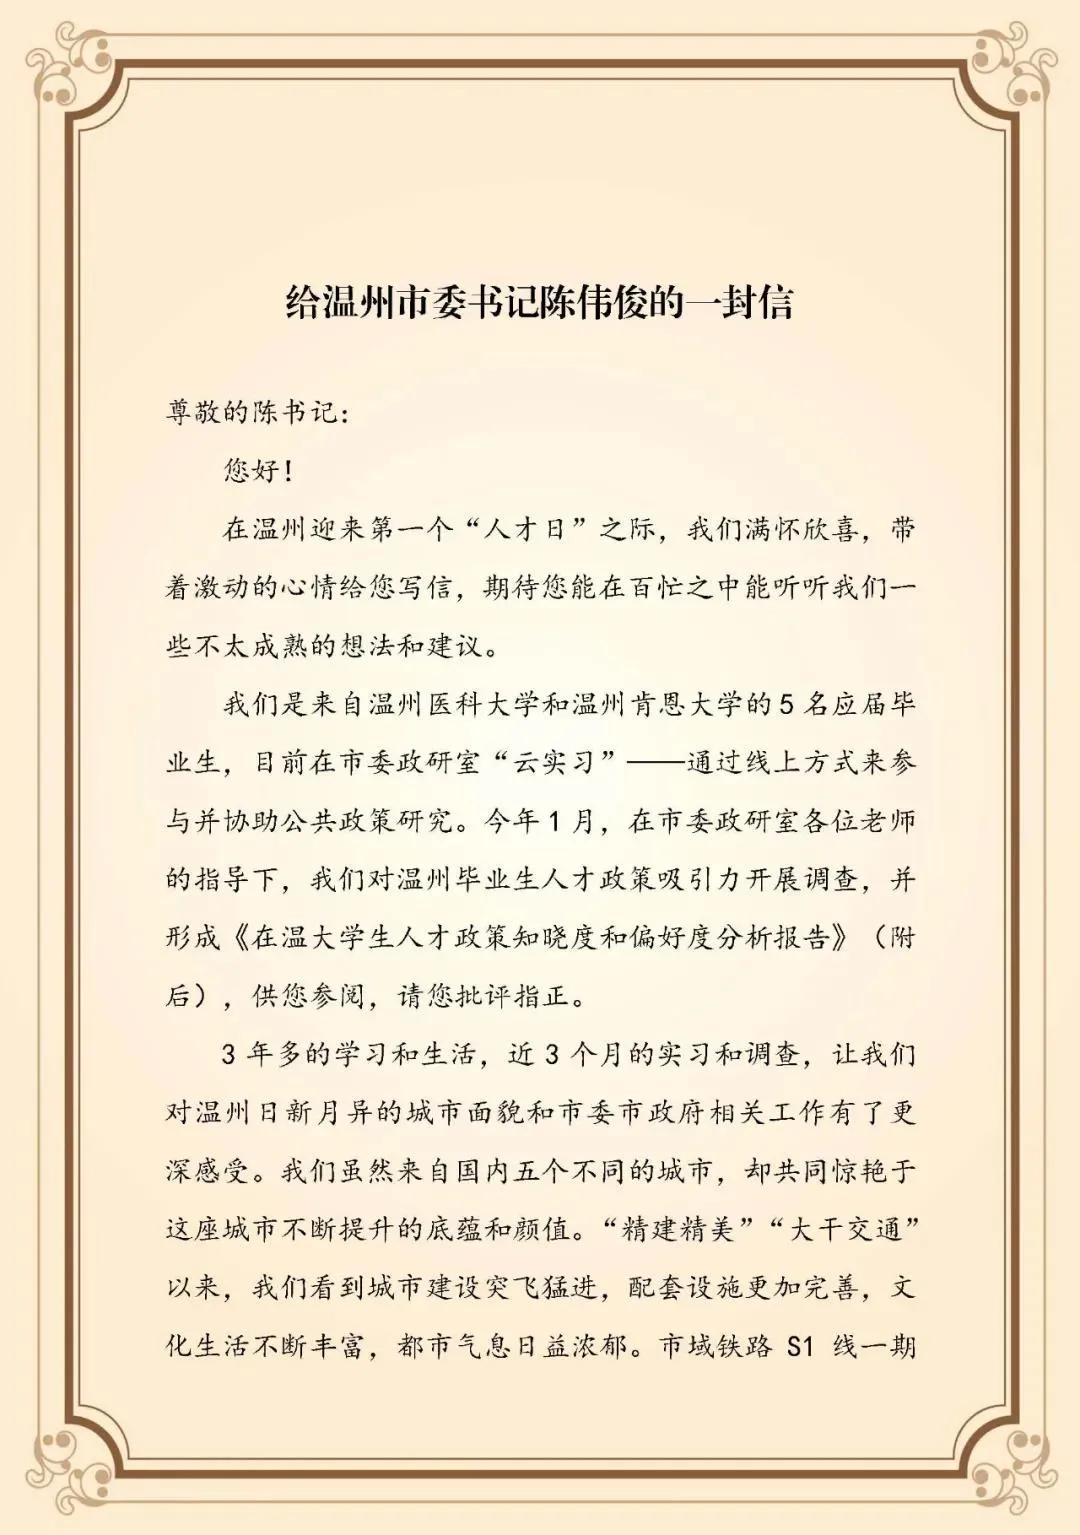 温肯学子给市委书记陈伟俊写了一封信……